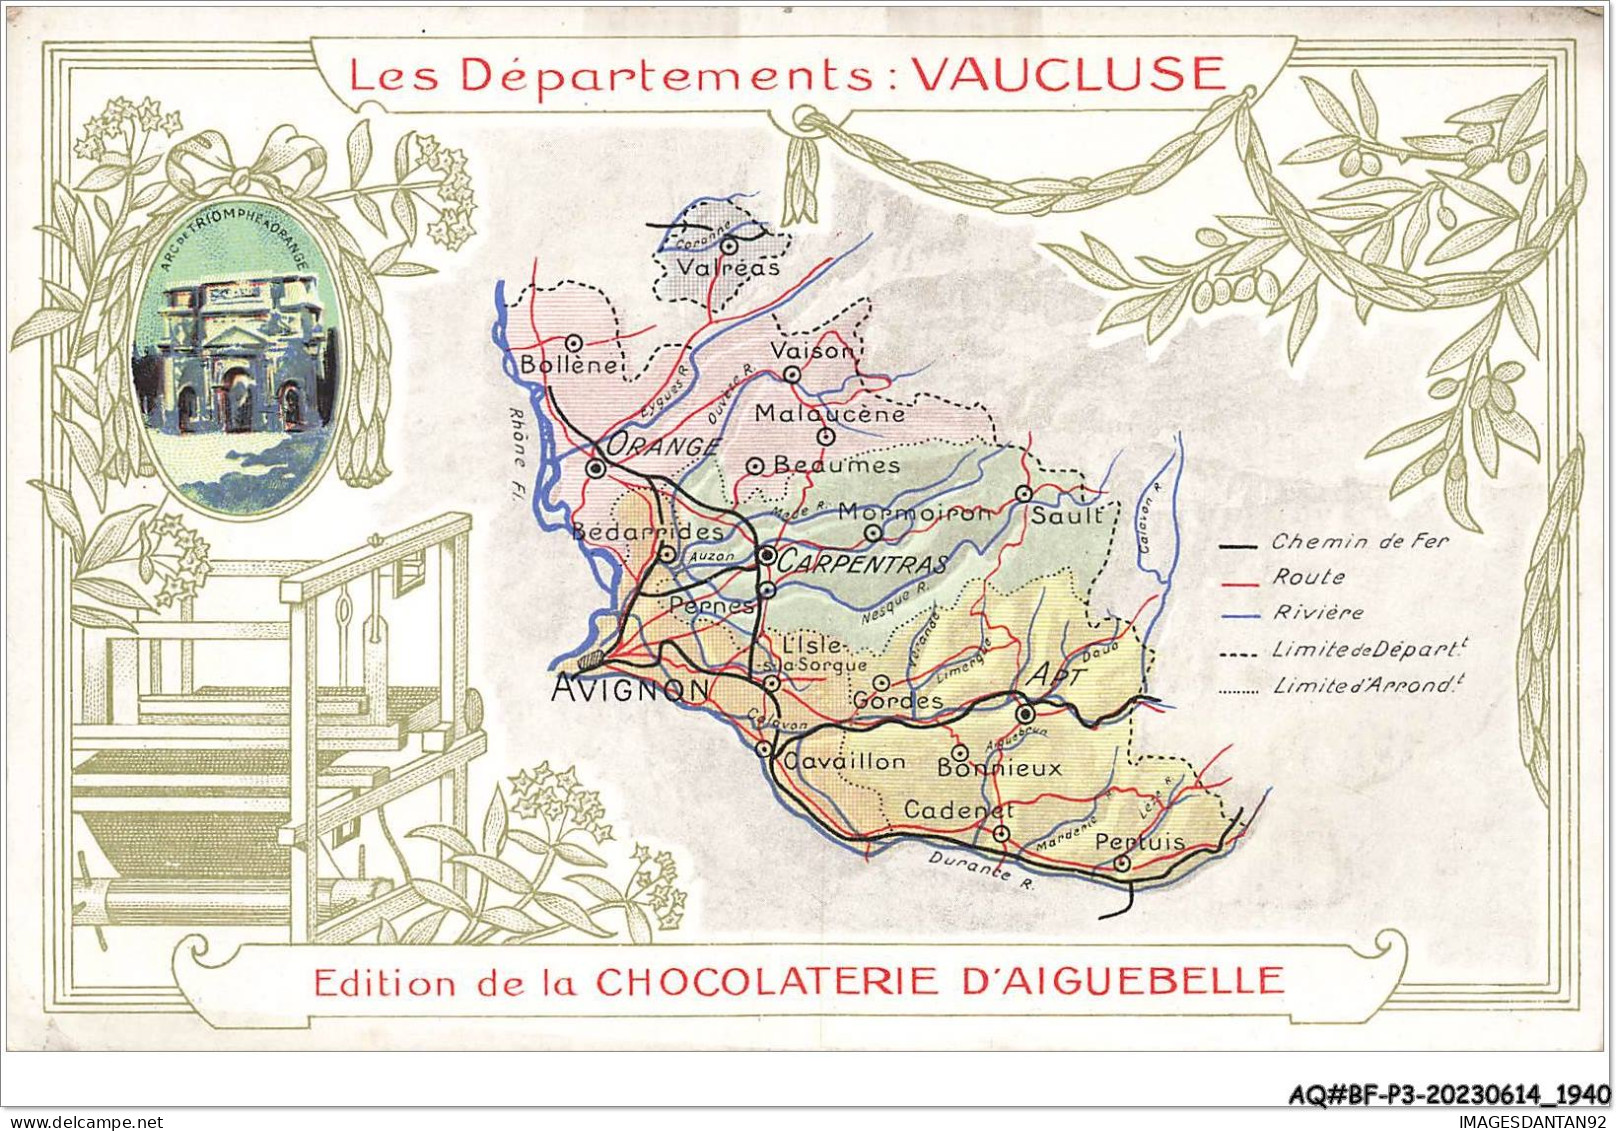 AQ#BFP3-CHROMOS-0968 - CHOCOLAT D'AIGUEBELLE - Les Départements - Vaucluse - Aiguebelle